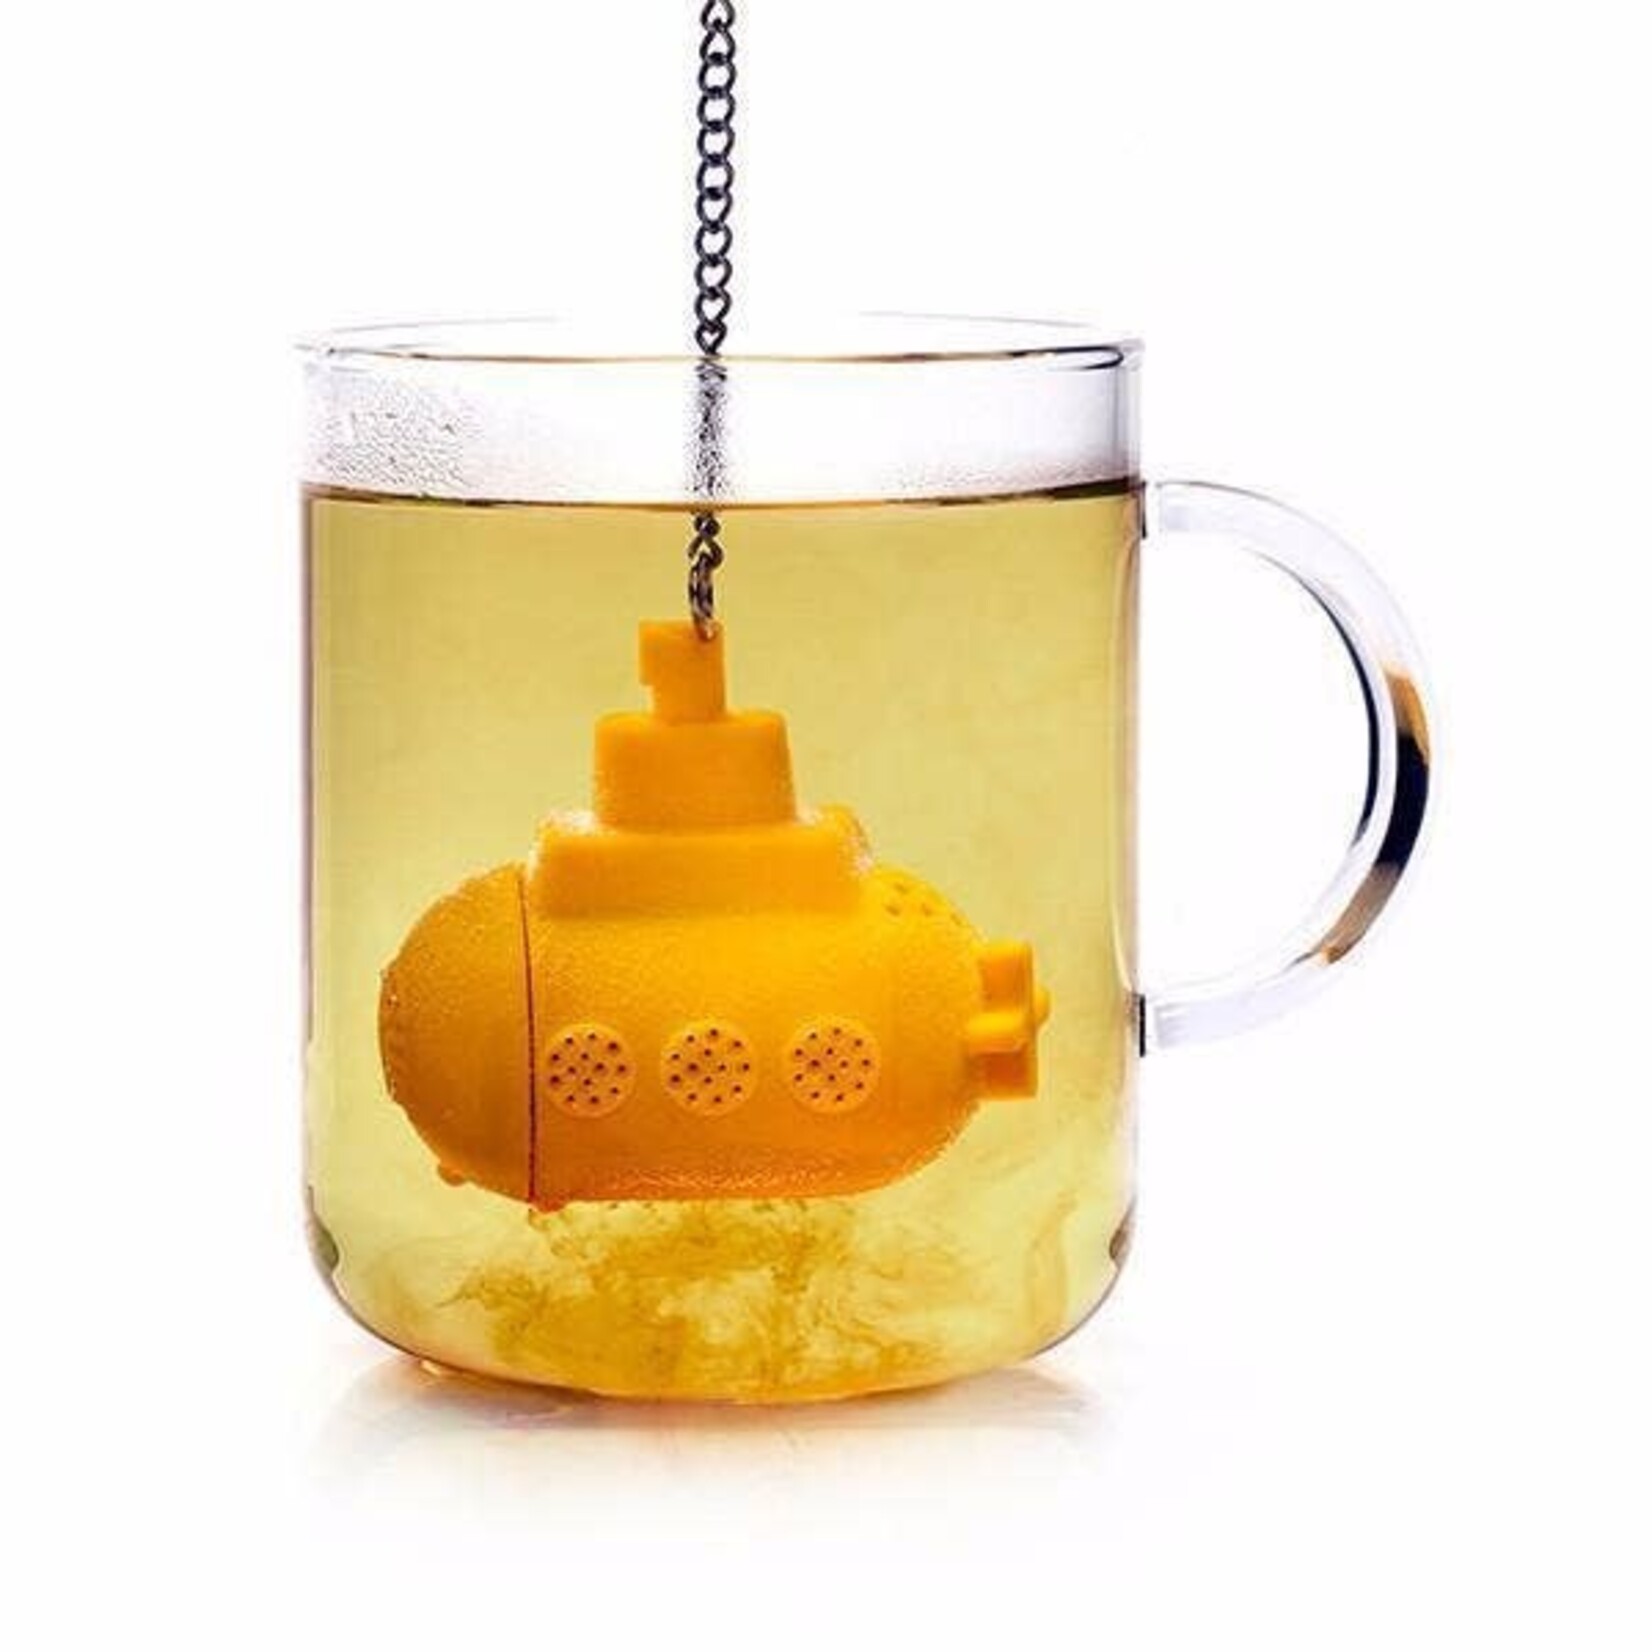 Sub Tea Infuser